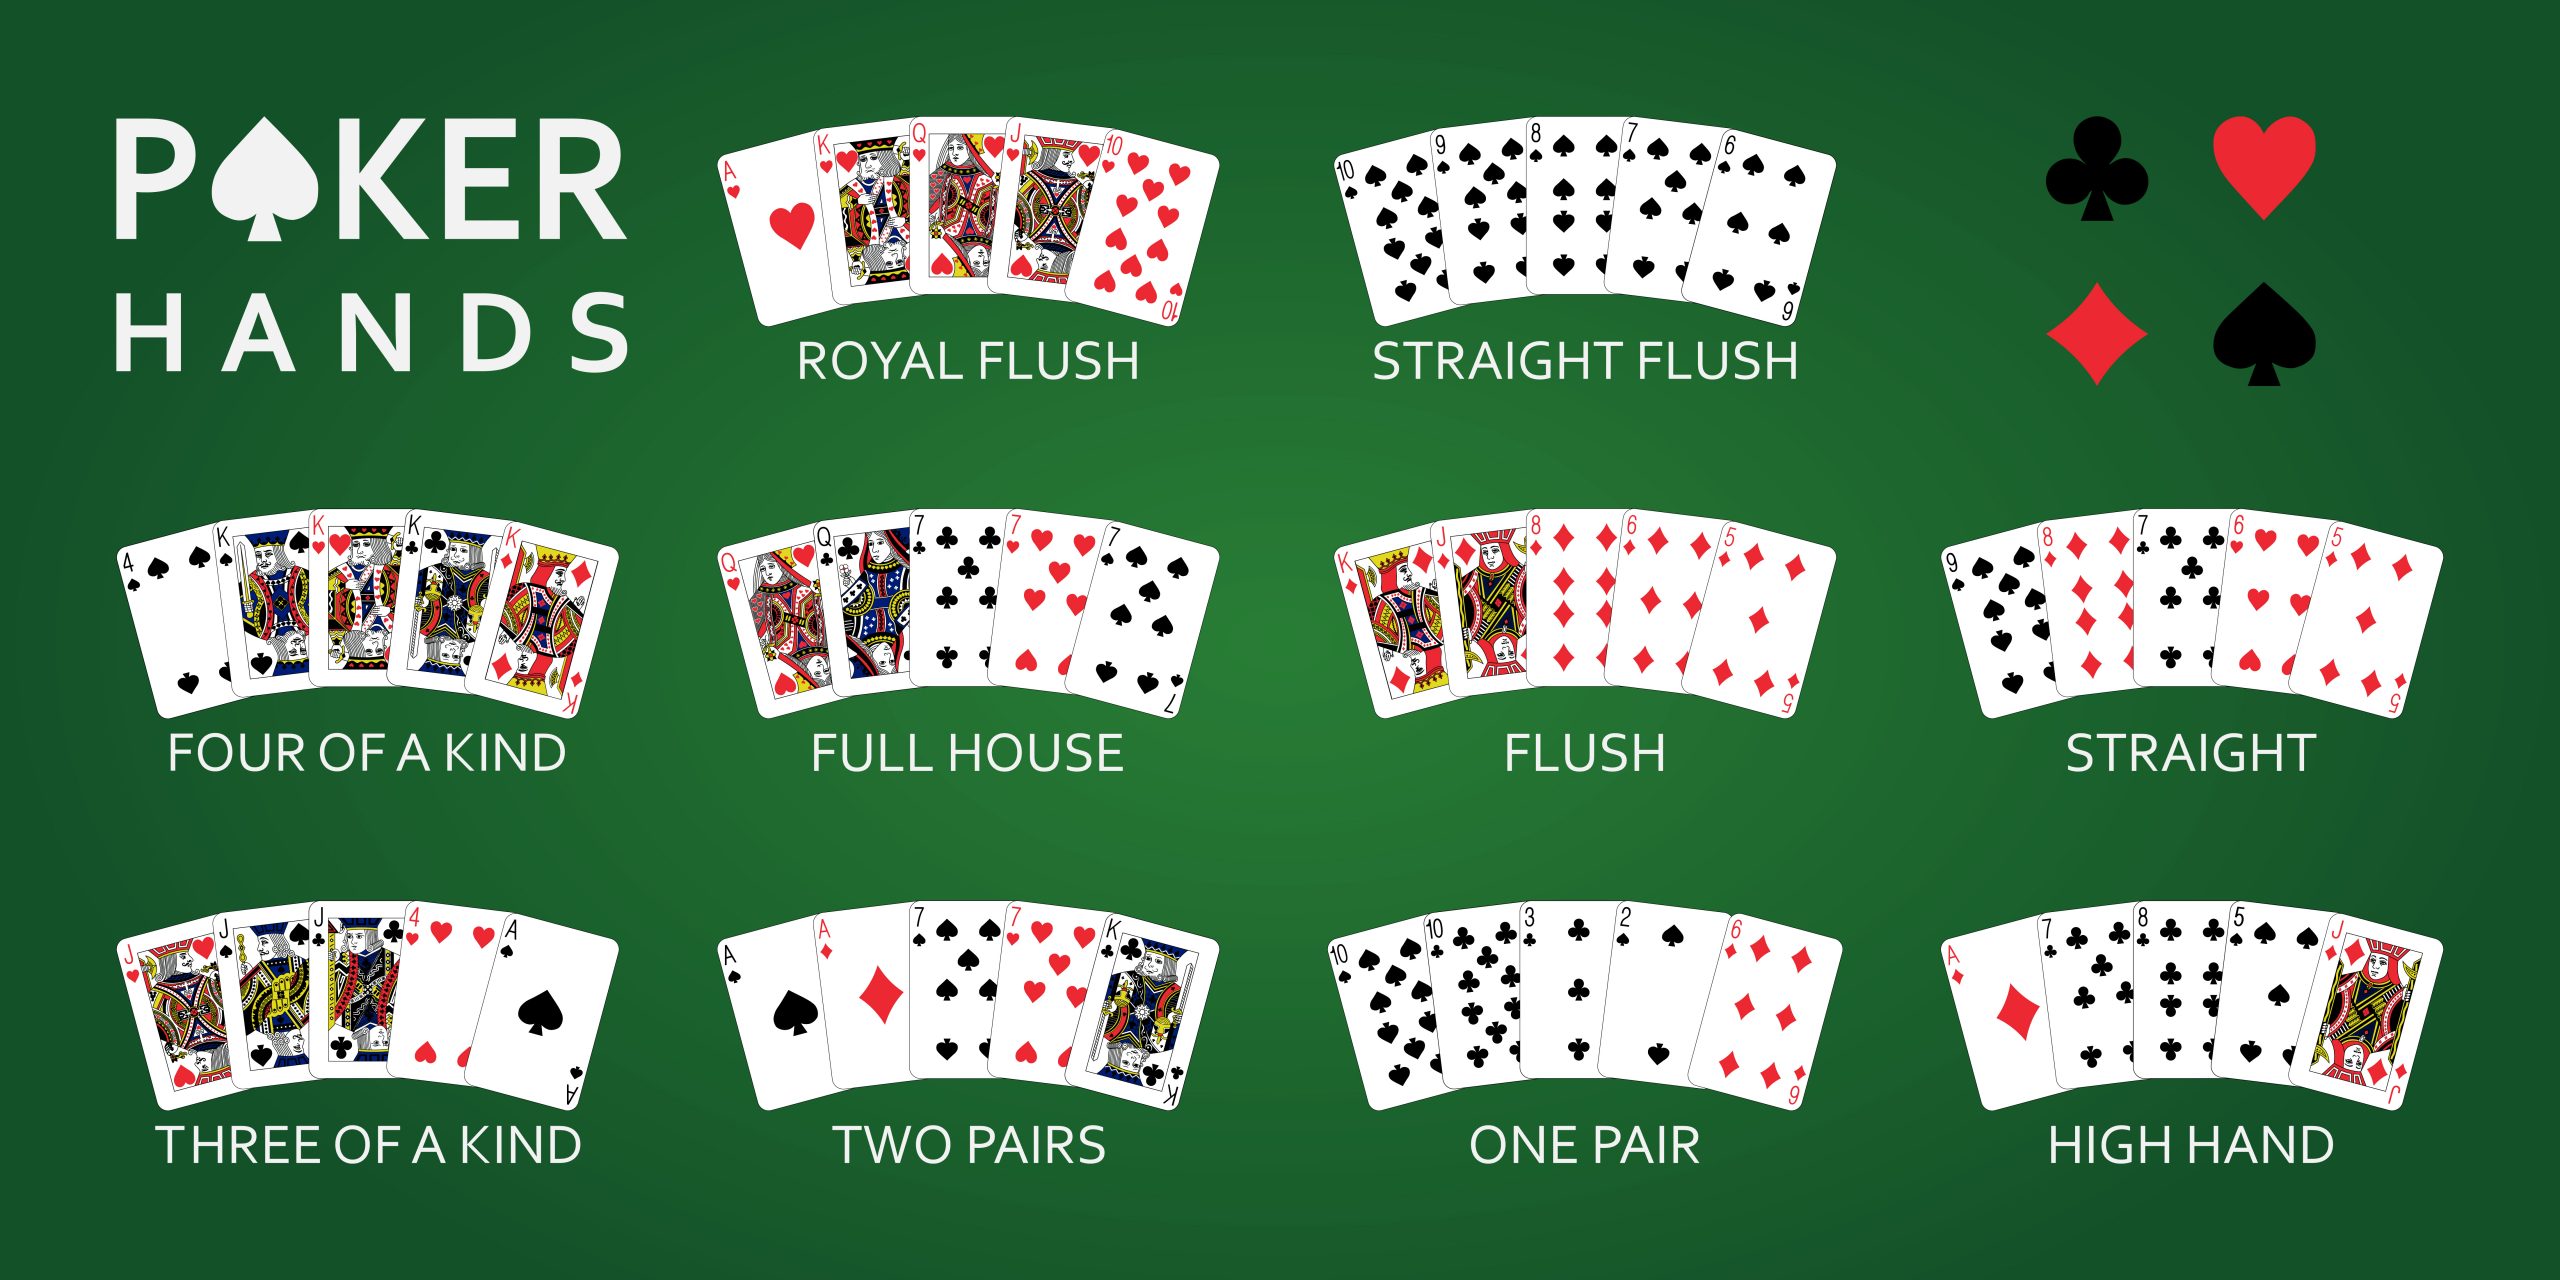 poker - The Six Figure Challenge